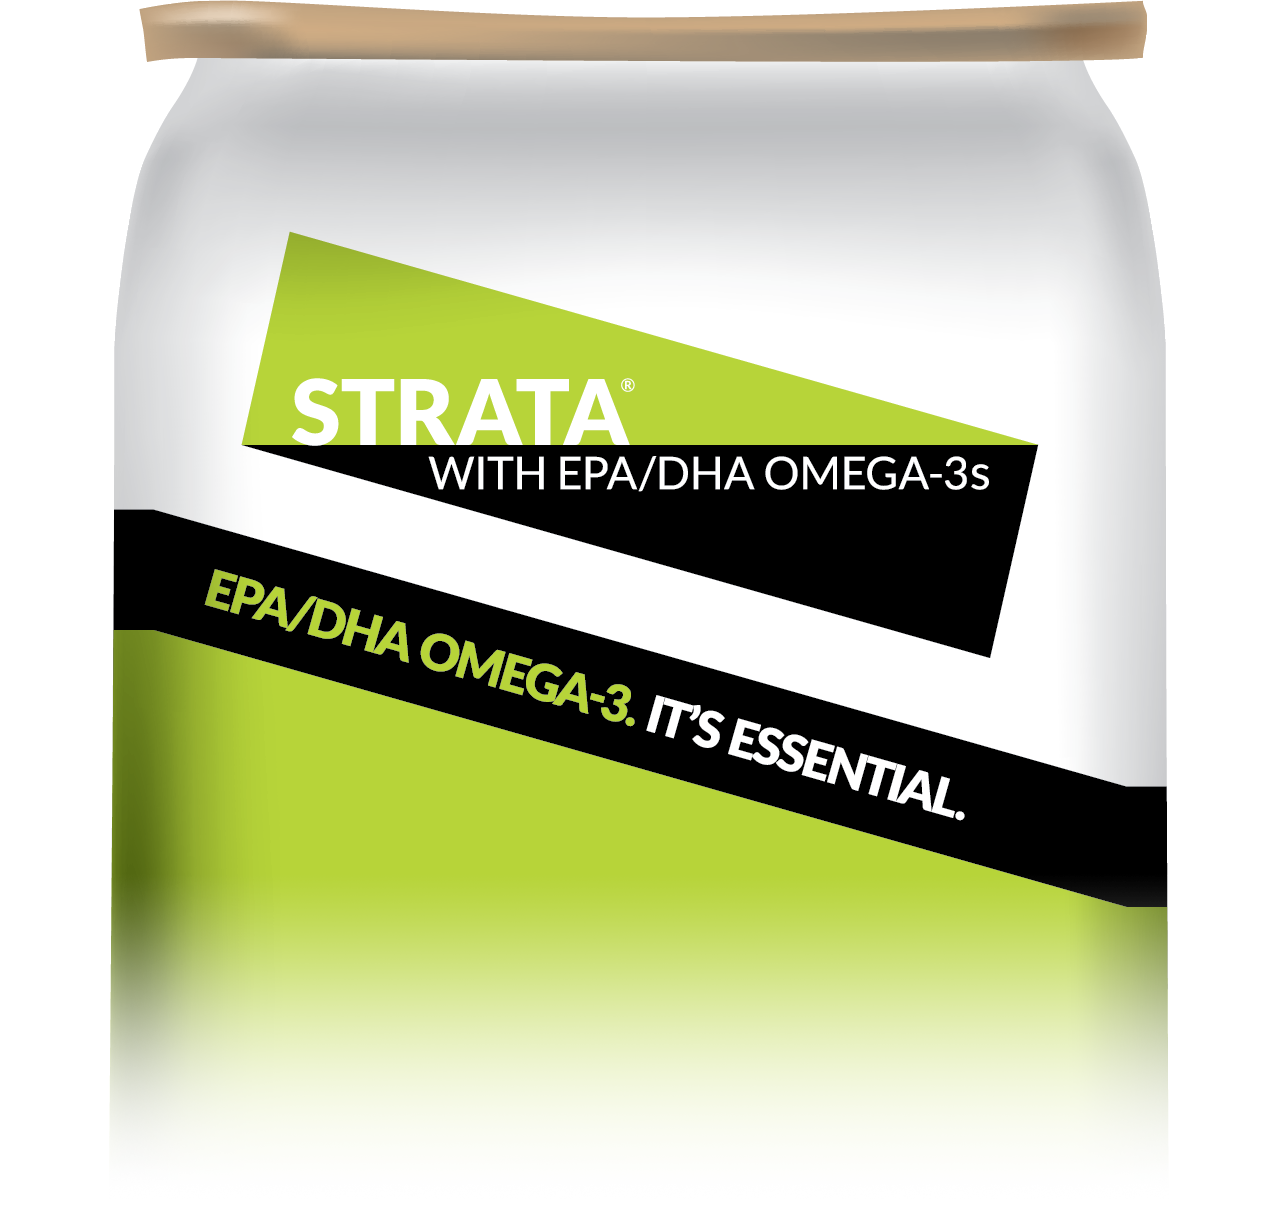 Strata with EPA/DHA Omega-3